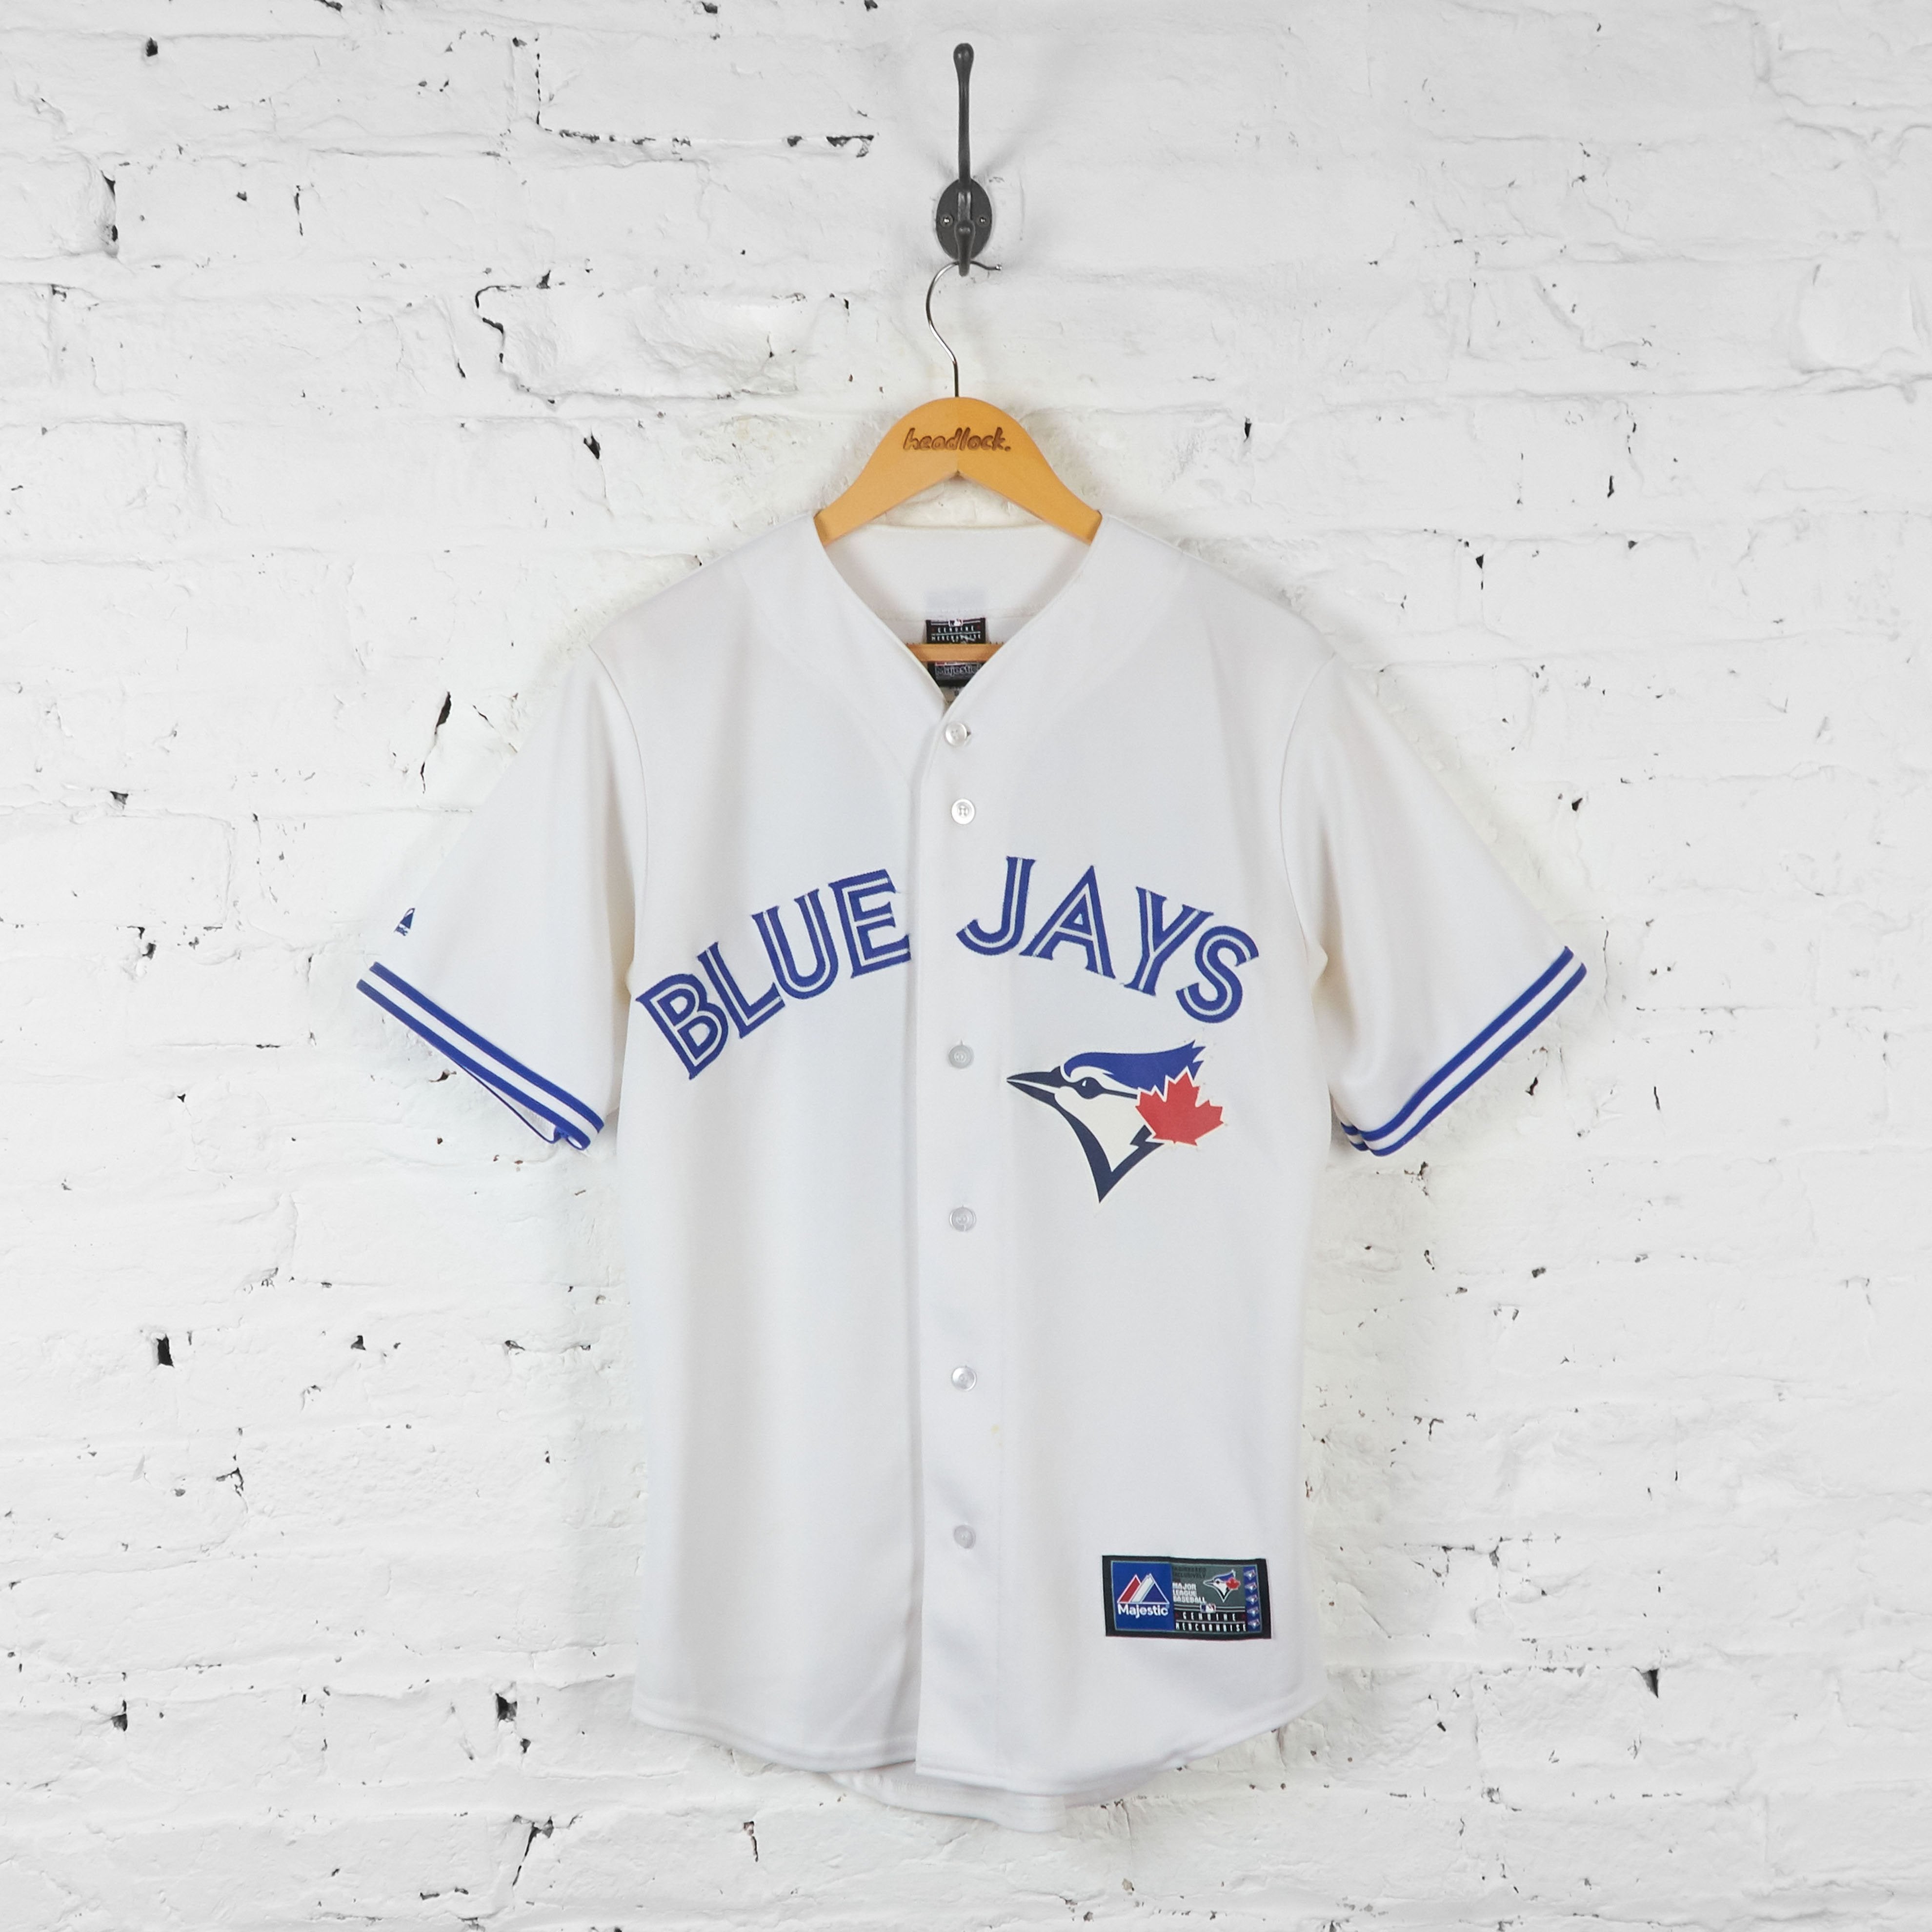 Toronto Blue Jays Bautista Baseball Jersey - White - S – Headlock